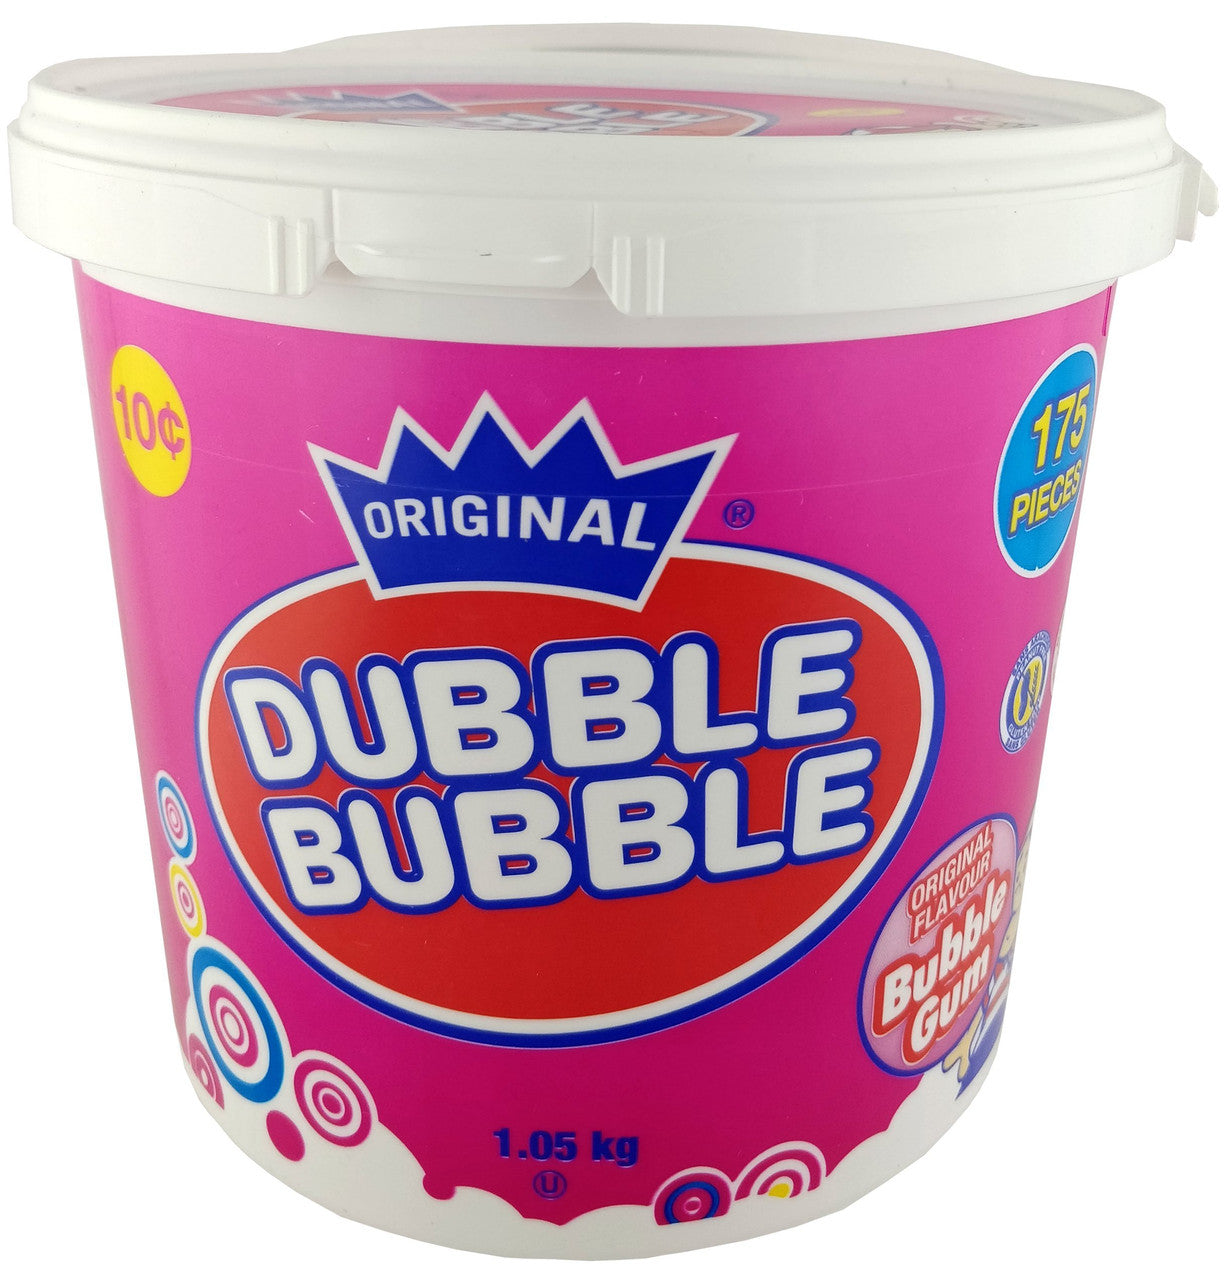 Dubble Bubble Original Flavour Bubble Gum 1.05kg/2.3lbs., 175 count, {Imported from Canada}